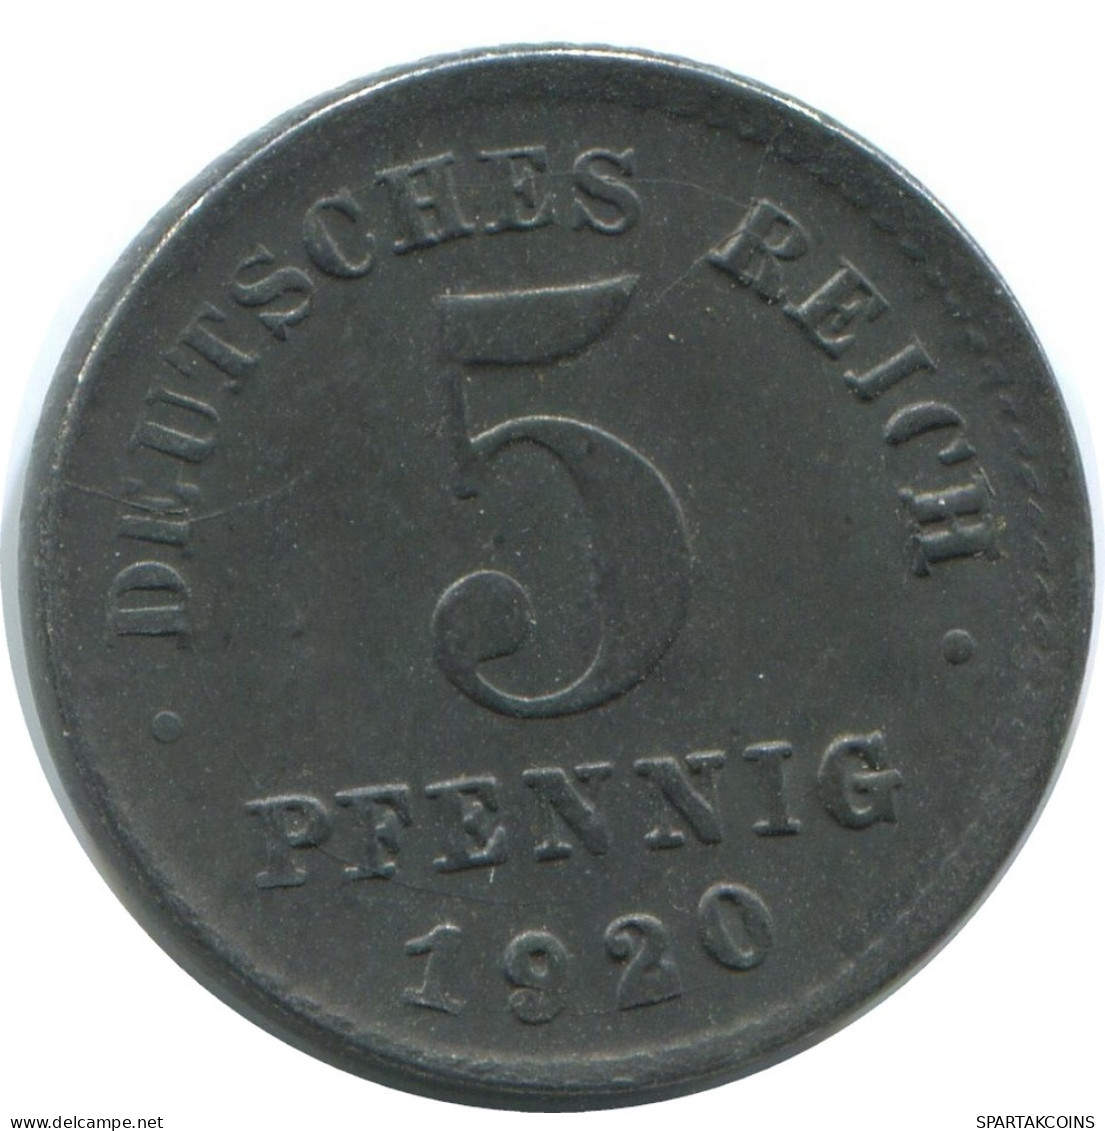 5 PFENNIG 1920 D GERMANY Coin #AE320.U - 5 Rentenpfennig & 5 Reichspfennig